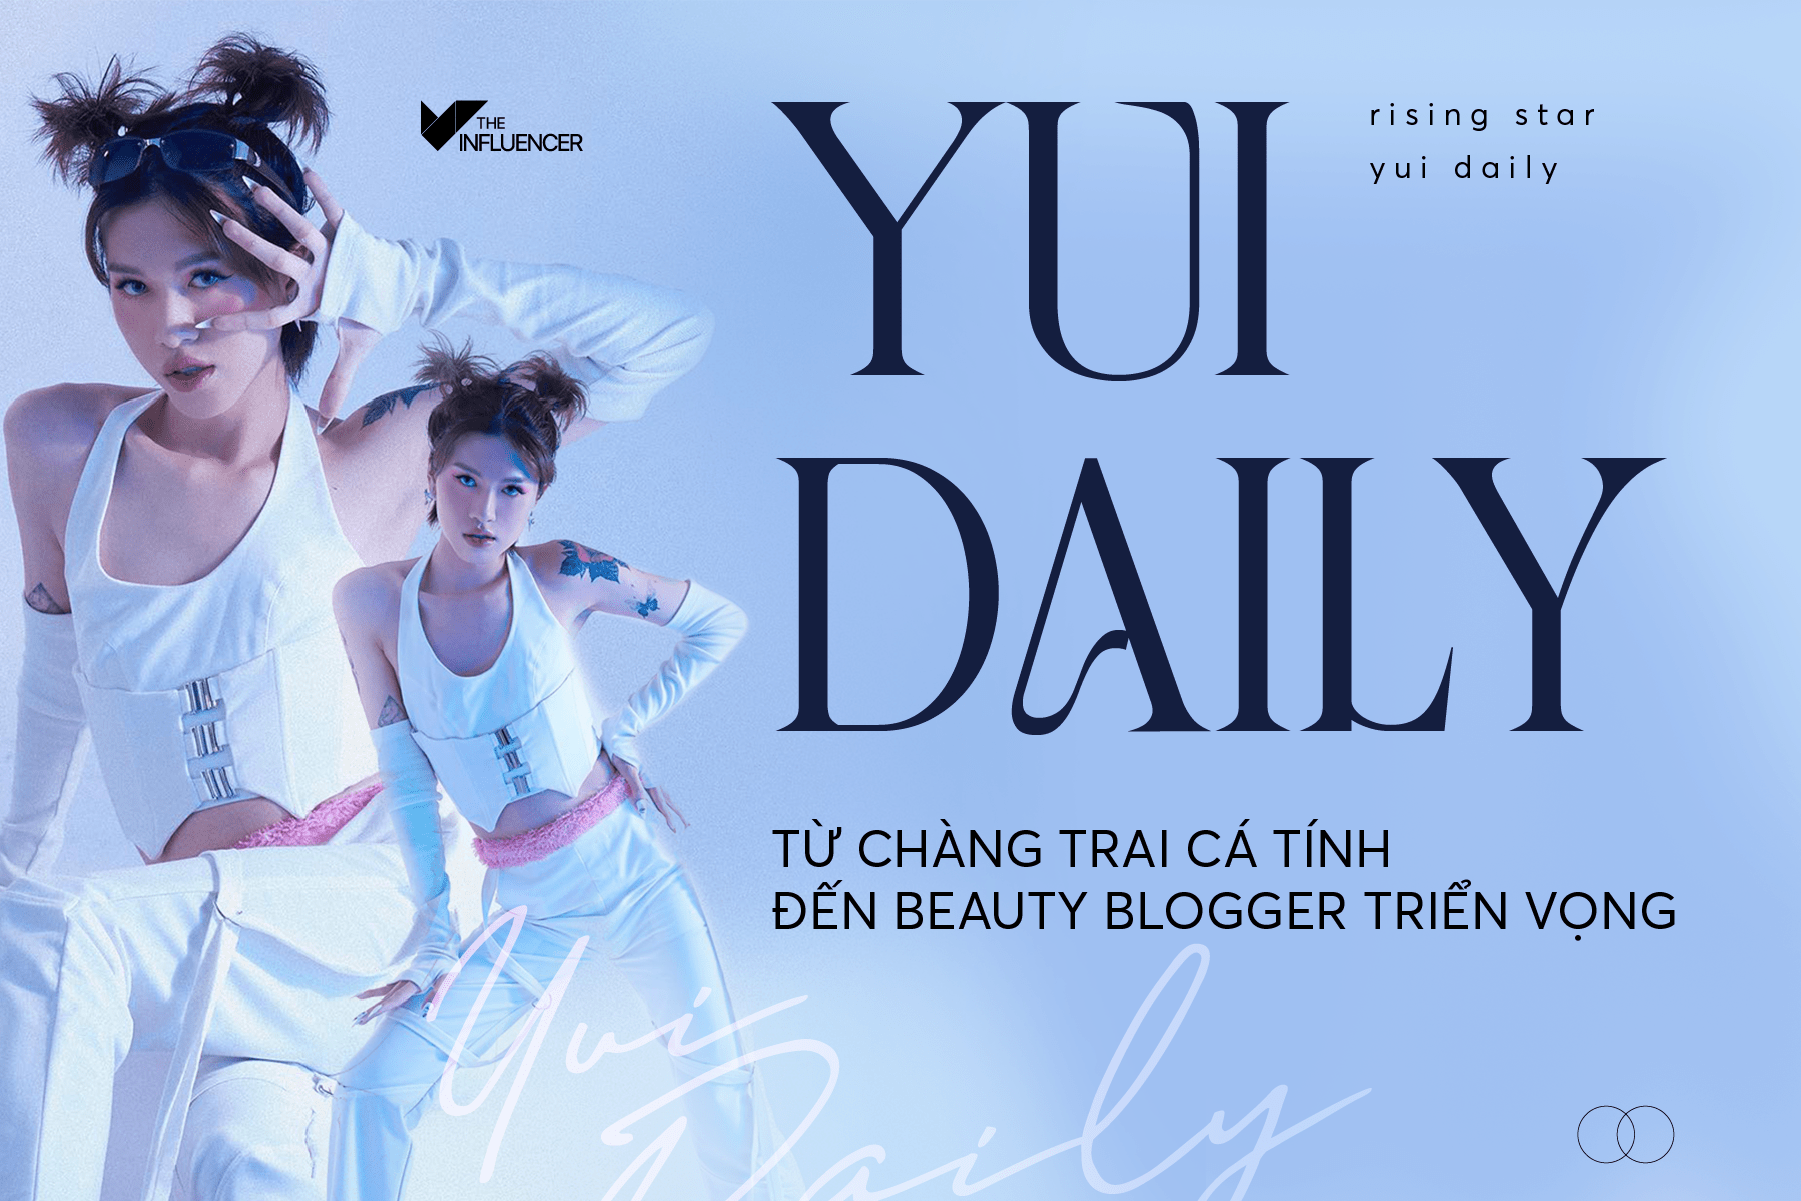 #Risingstar Yul Daily - Từ chàng trai cá tính đến beauty blogger triển vọng